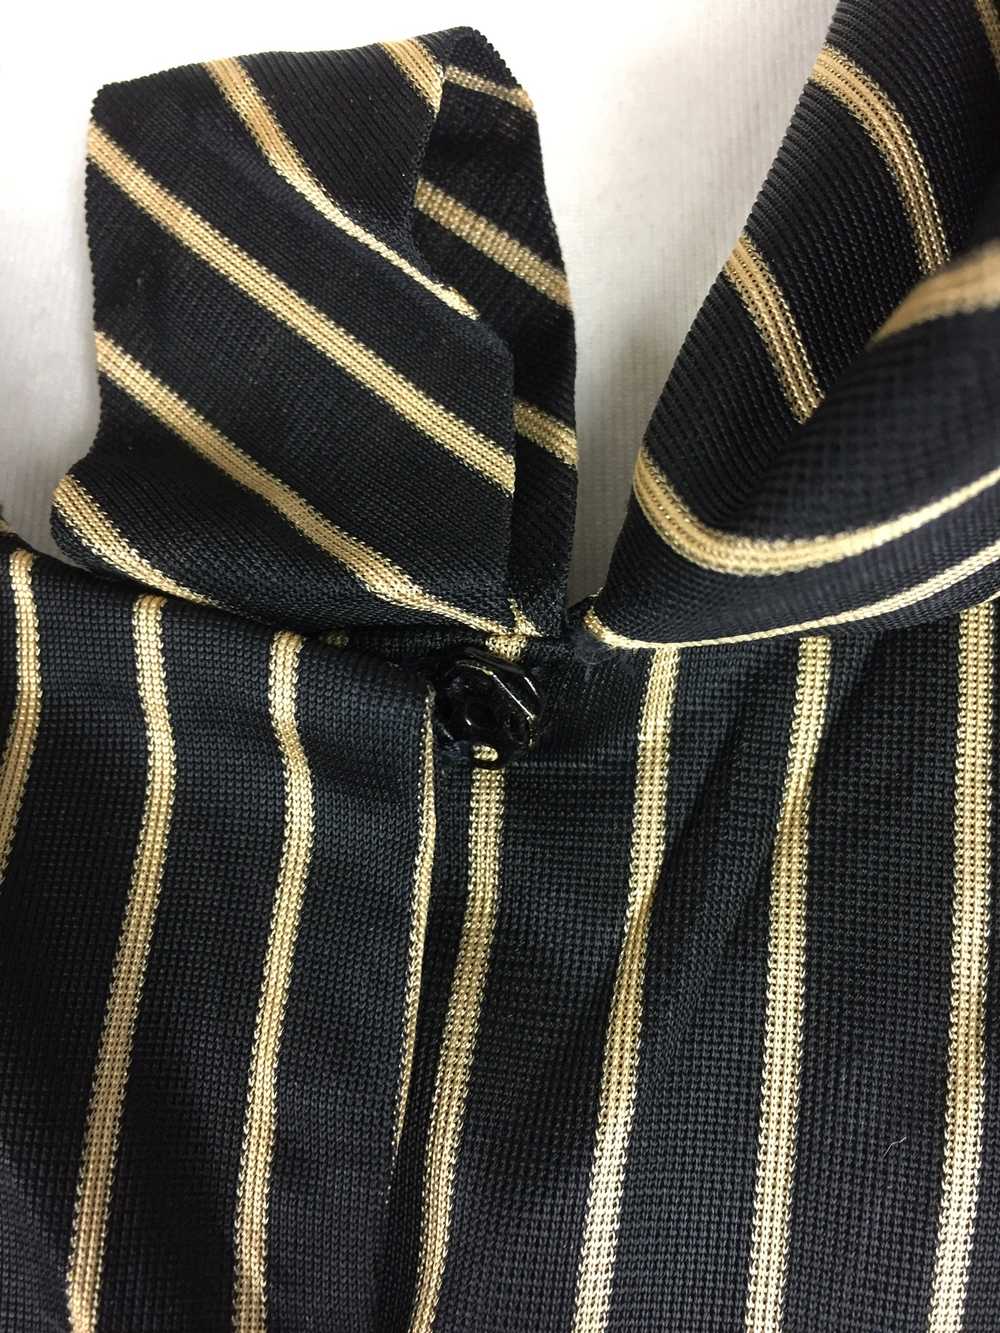 Original 1940s 40s Vintage Black And Gold Stripe … - image 12